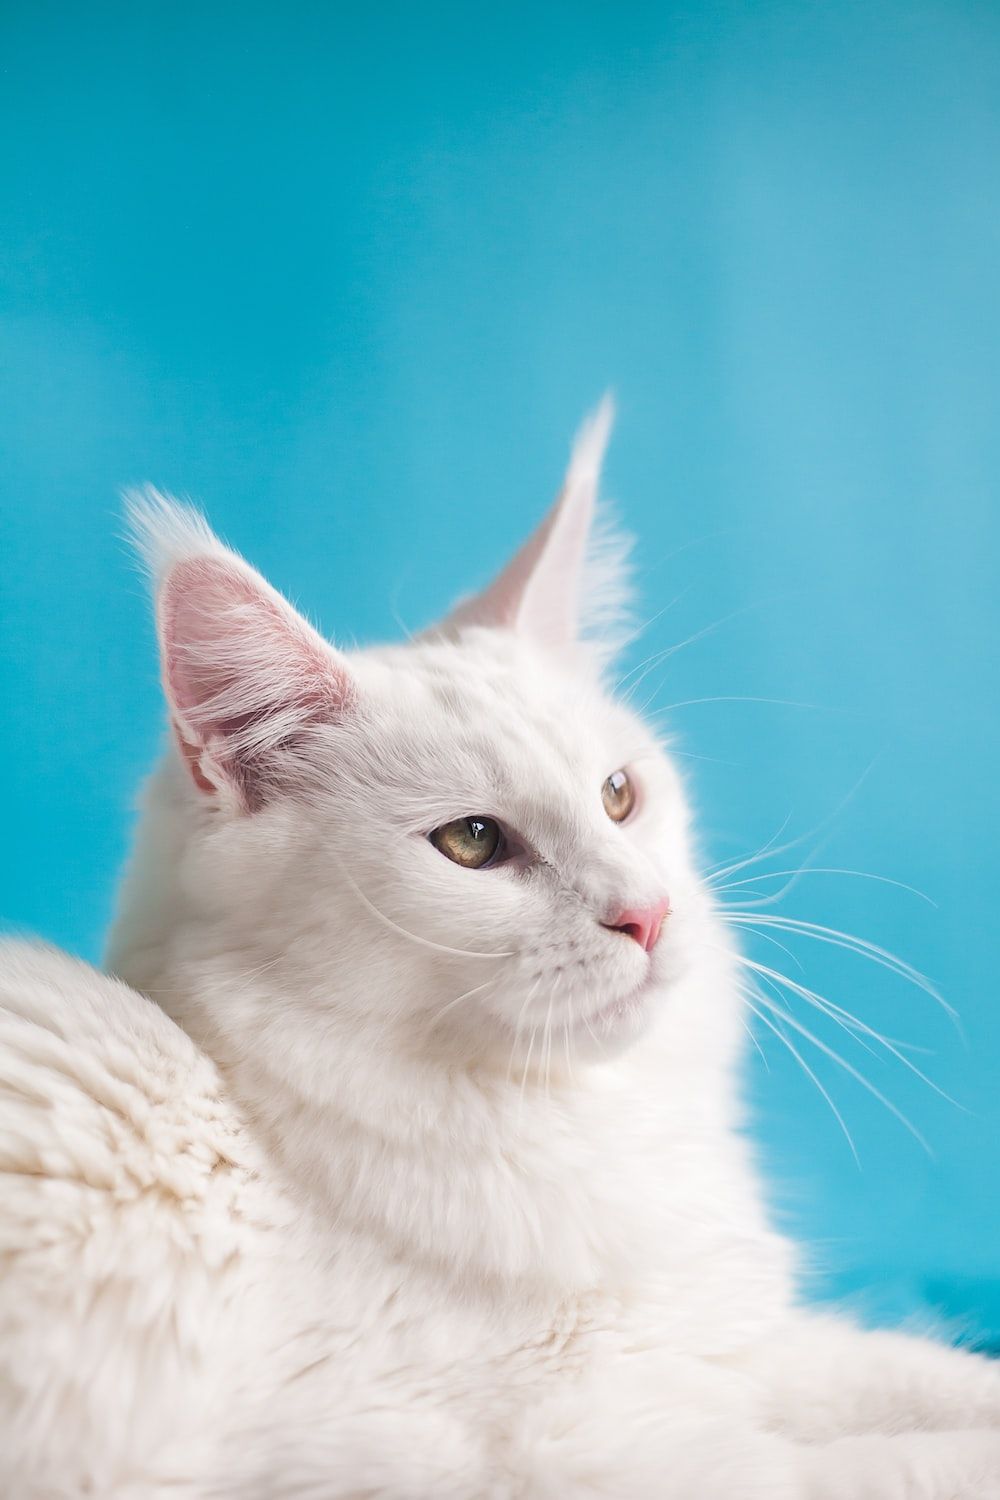  Katze Hintergrundbild 1000x1500. Foto zum Thema weiße Katze auf weißem Textil